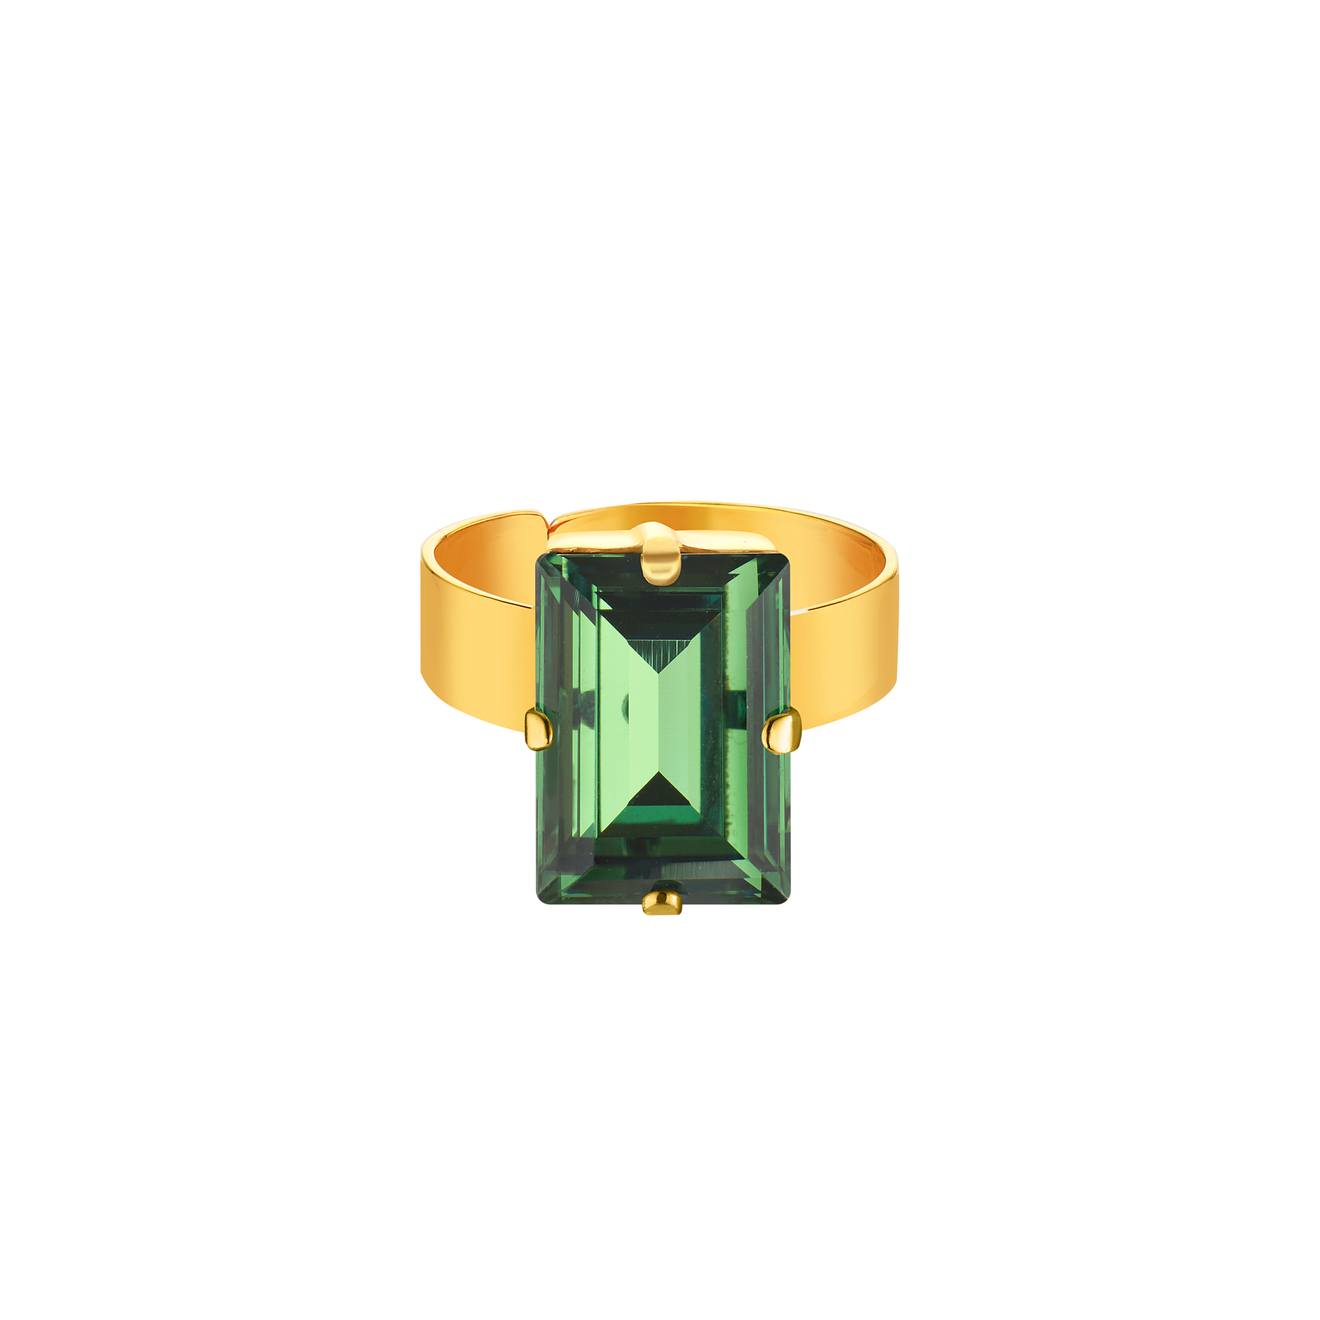 Phenomenal Studio Позолоченное кольцо с регулируемым размером и крупным кристаллом Baguette Erinite Gold phenomenal studio позолоченное кольцо wave ring с кристаллами